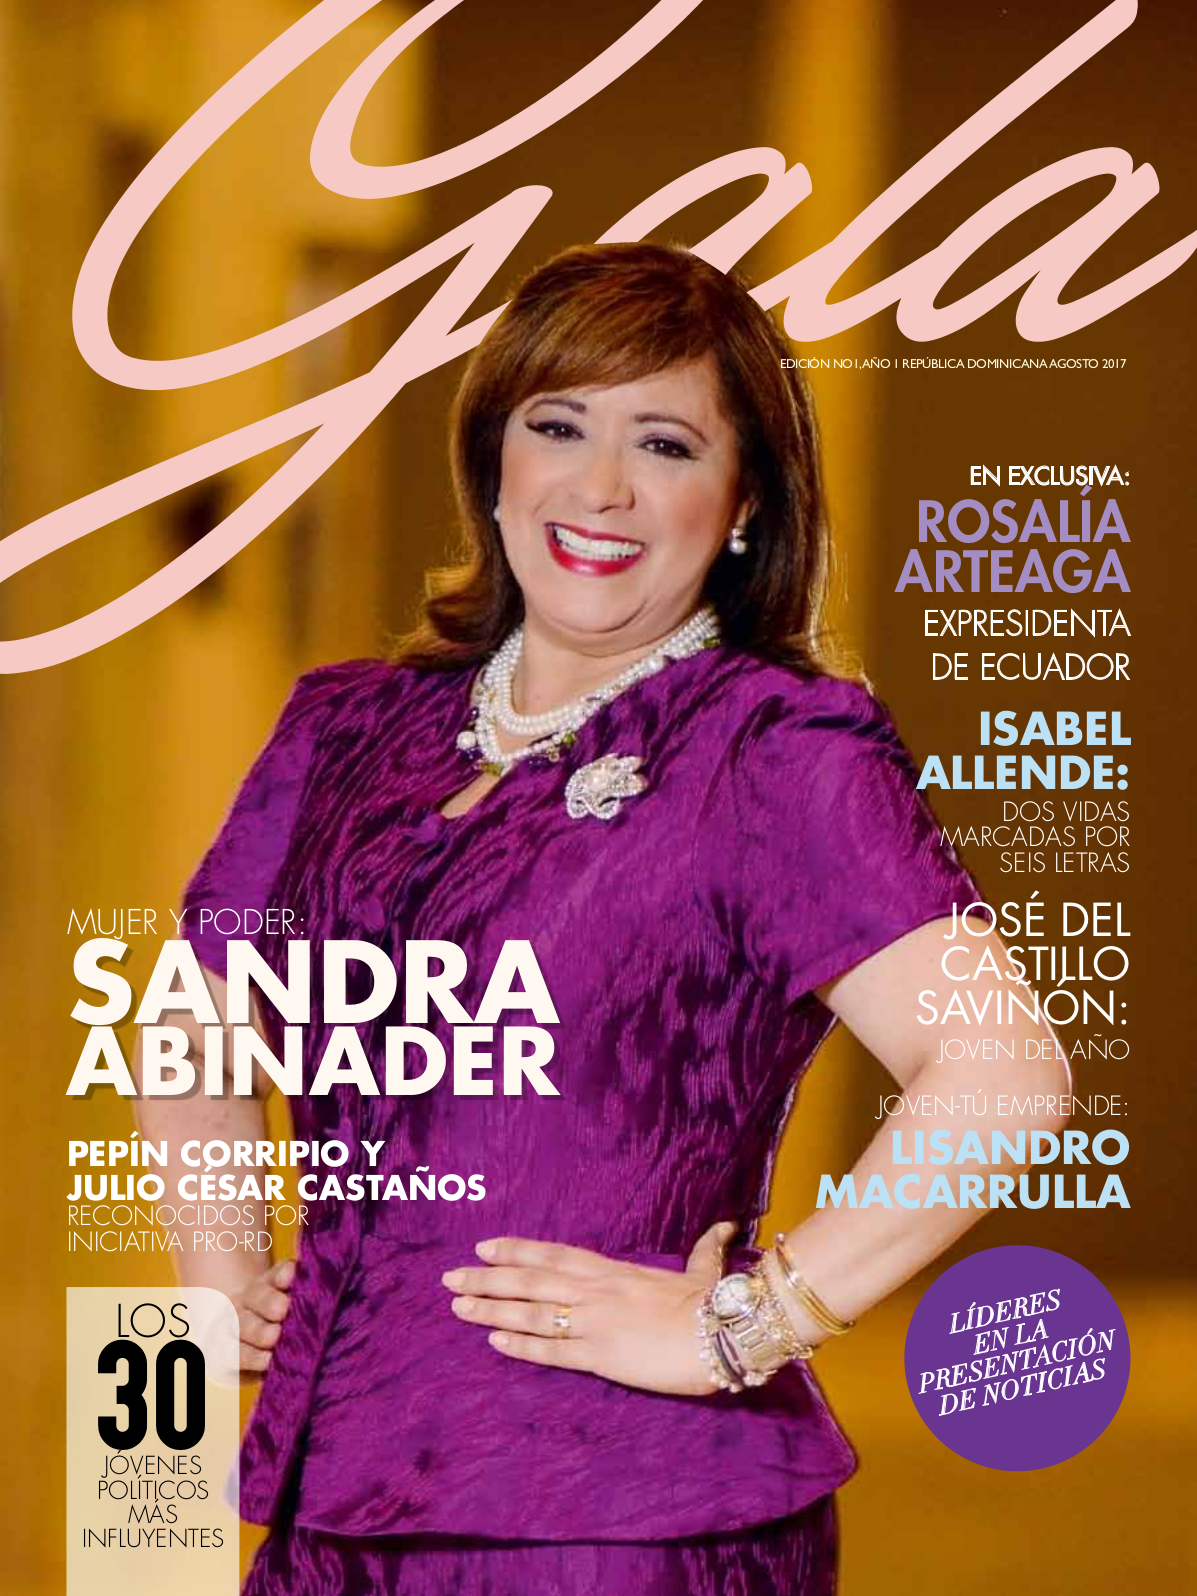 Gala, una revista abierta a la diversidad